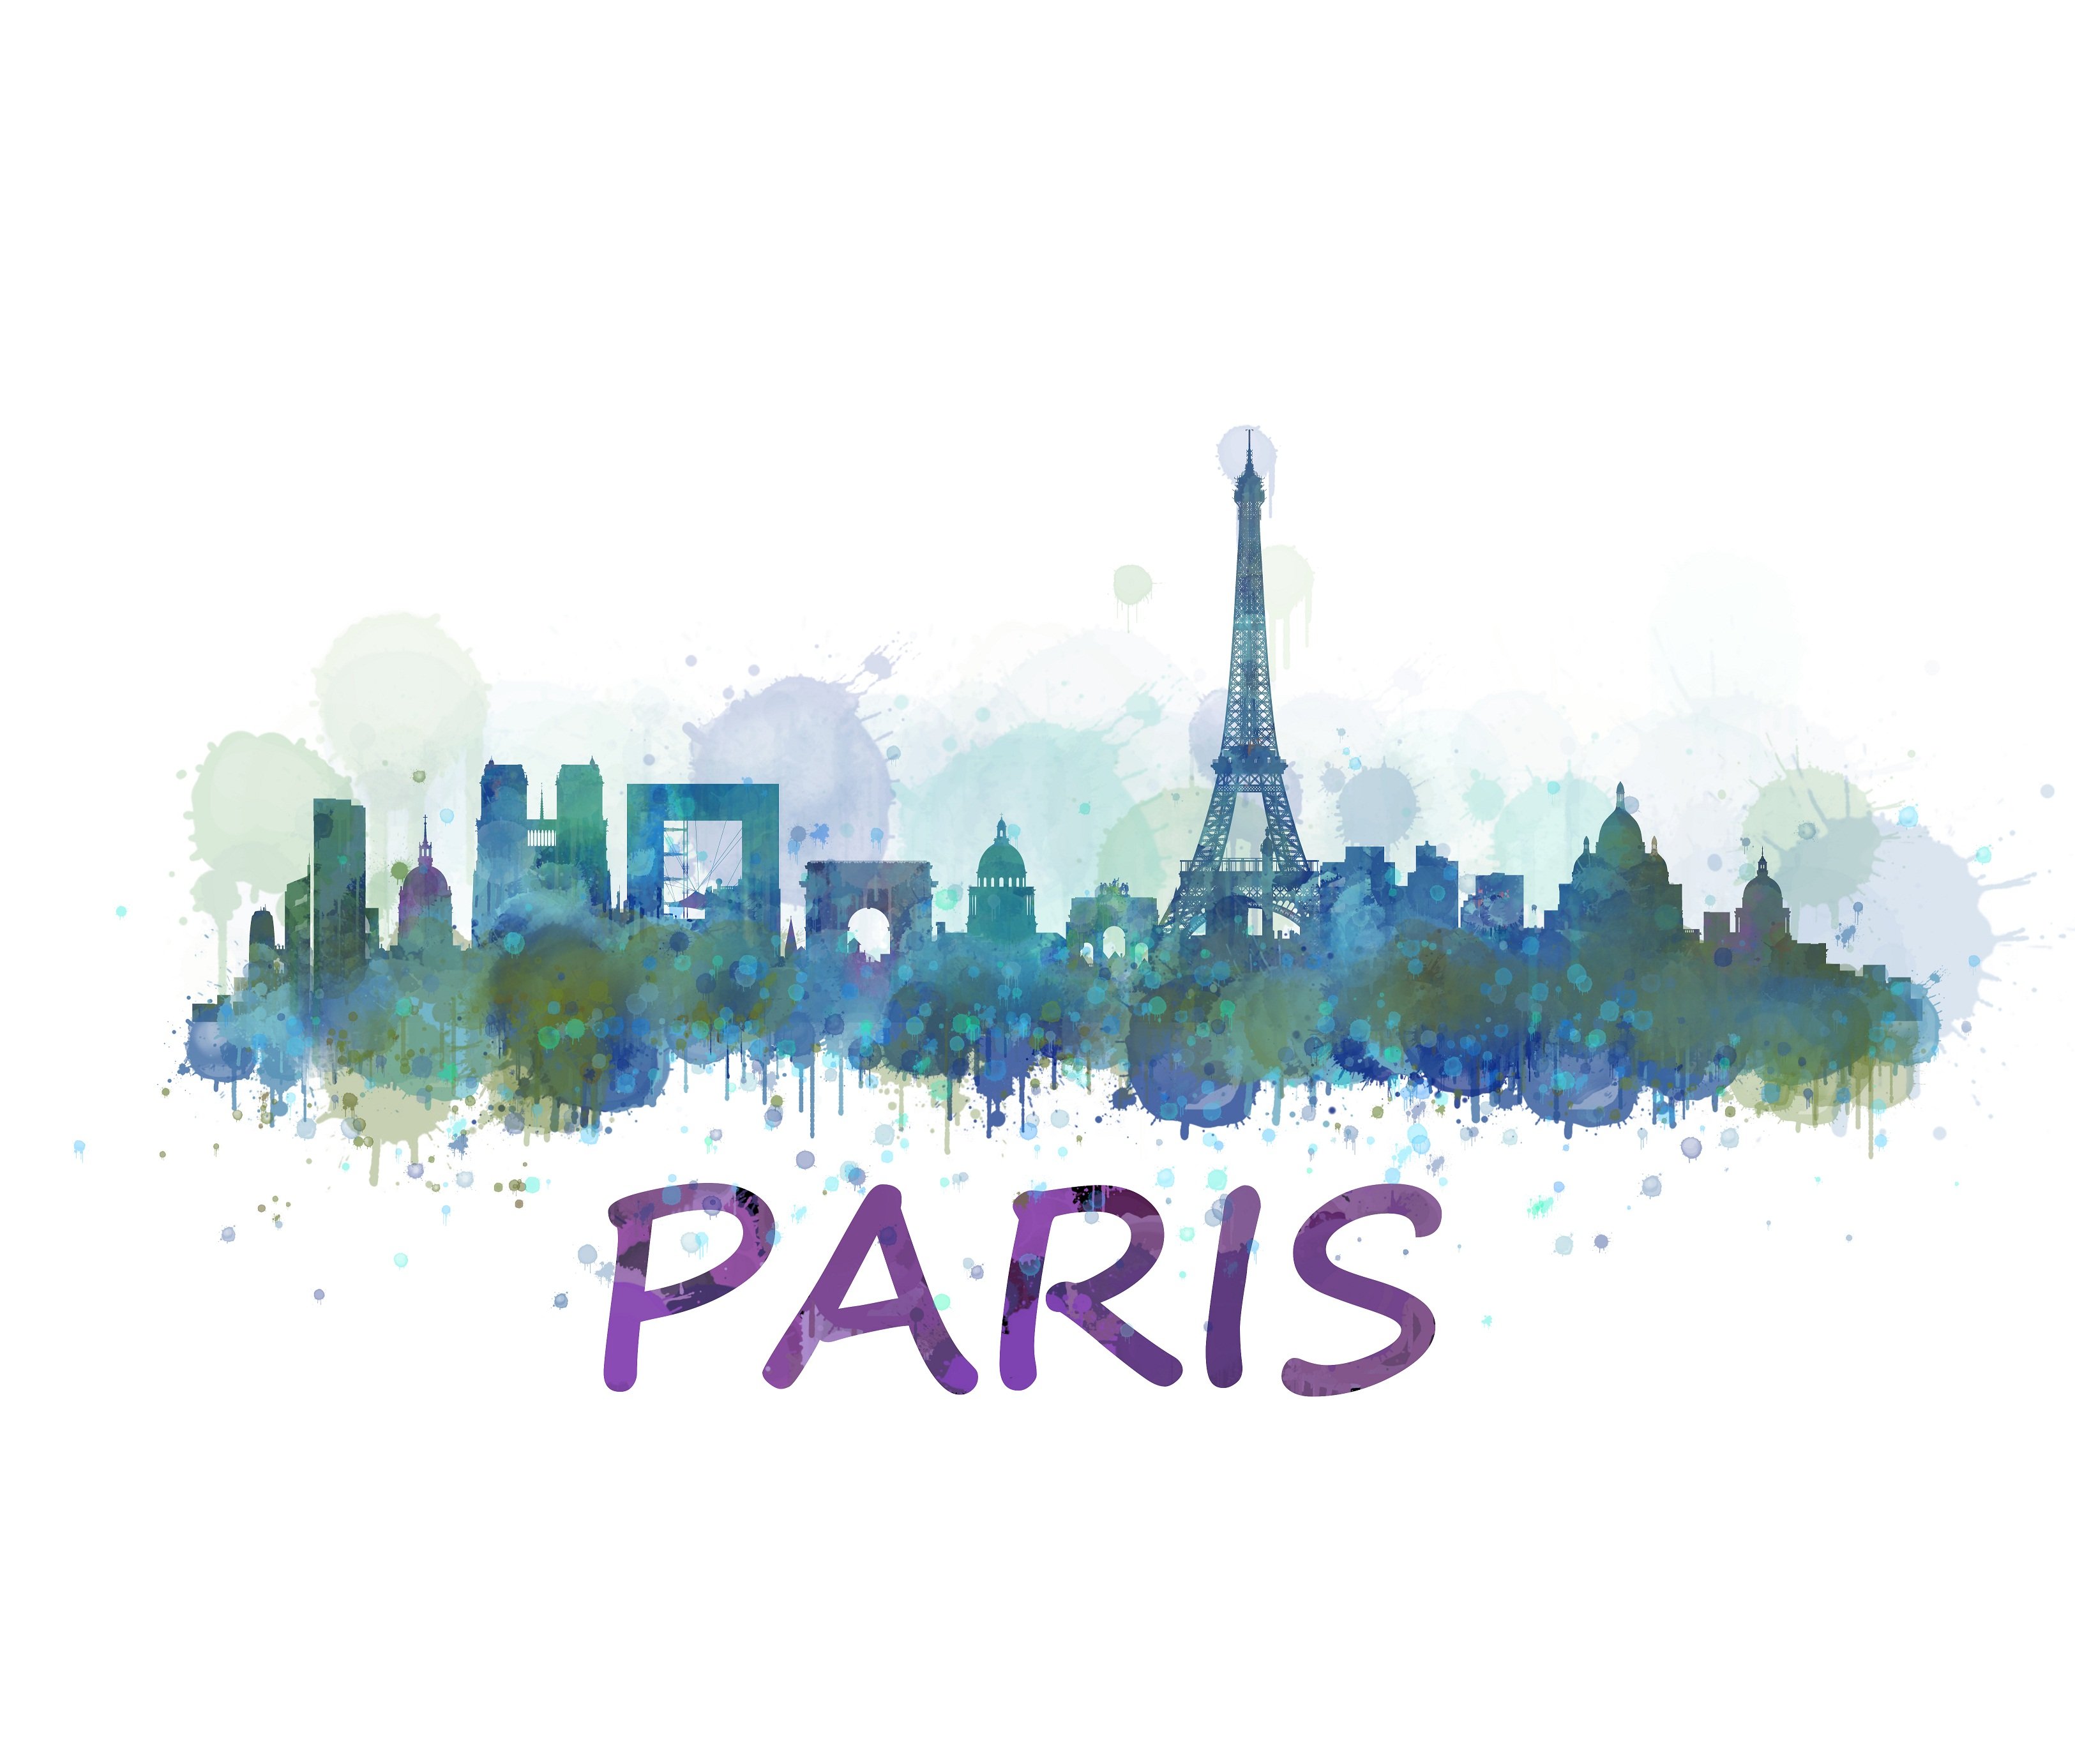 Paris Cityscape Skyline cover image.